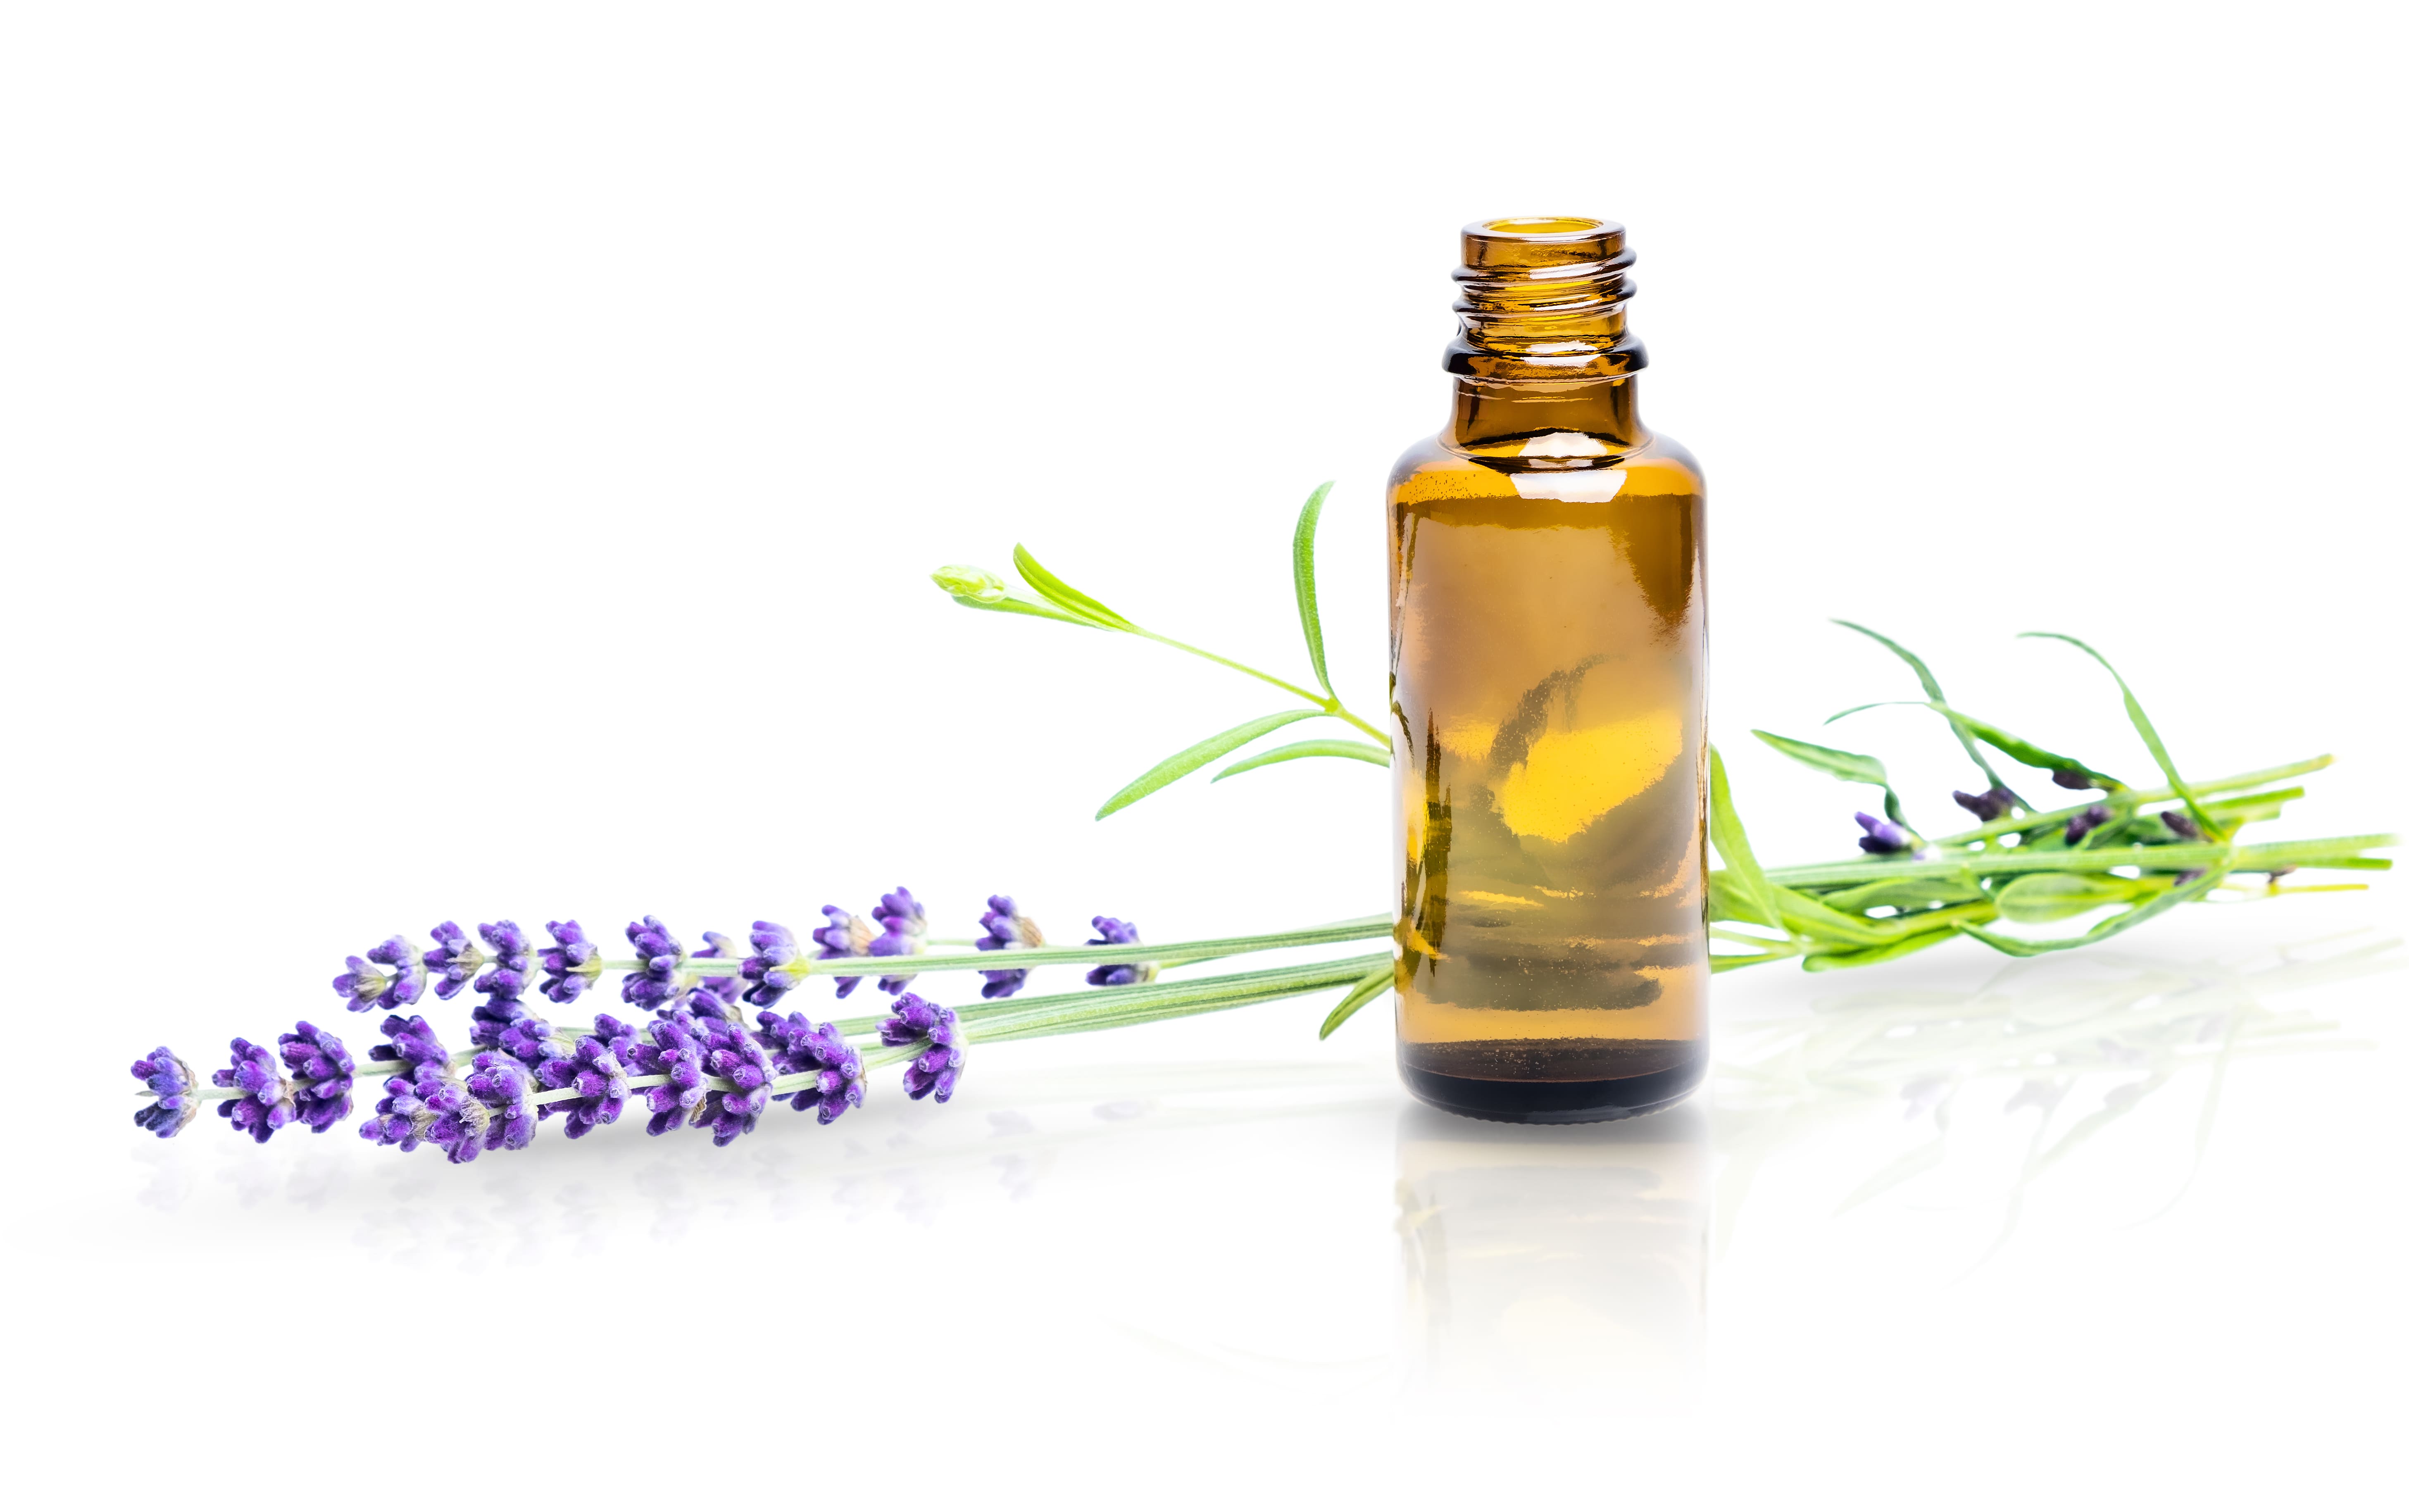 Lavendelblütenöl baut körperliche und seelische Spannungen ab, wirkt ausgleichend und beruhigend, auch desinfizierend